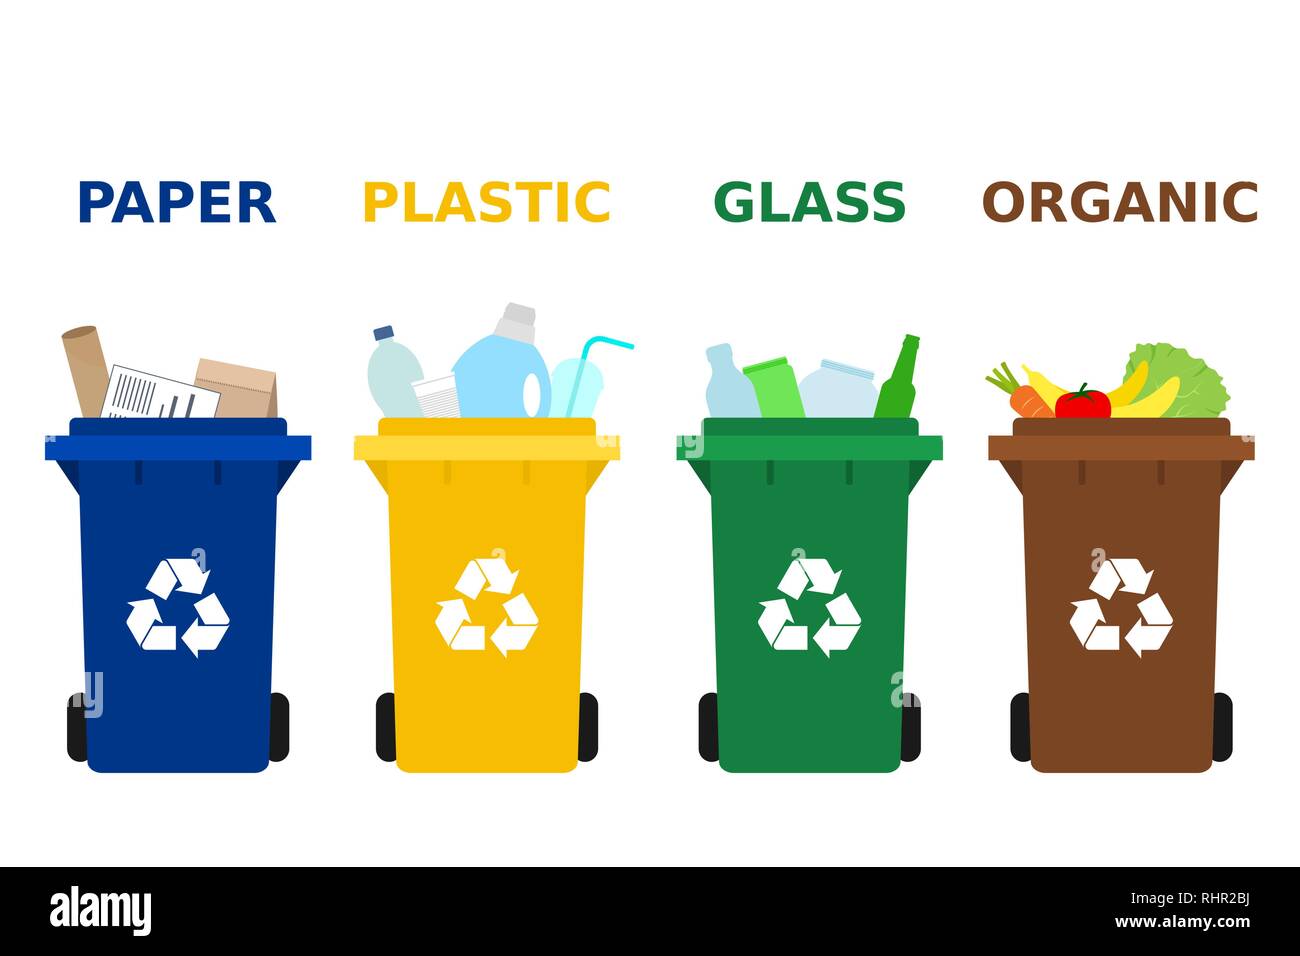 Destello Altoparlante intermitente Botes de basura de diferentes colores con papel, plástico, vidrio y  apropiados para el reciclaje de residuos orgánicos. Separar la basura, la  clasificación de residuos, la gestión de residuos Imagen Vector de